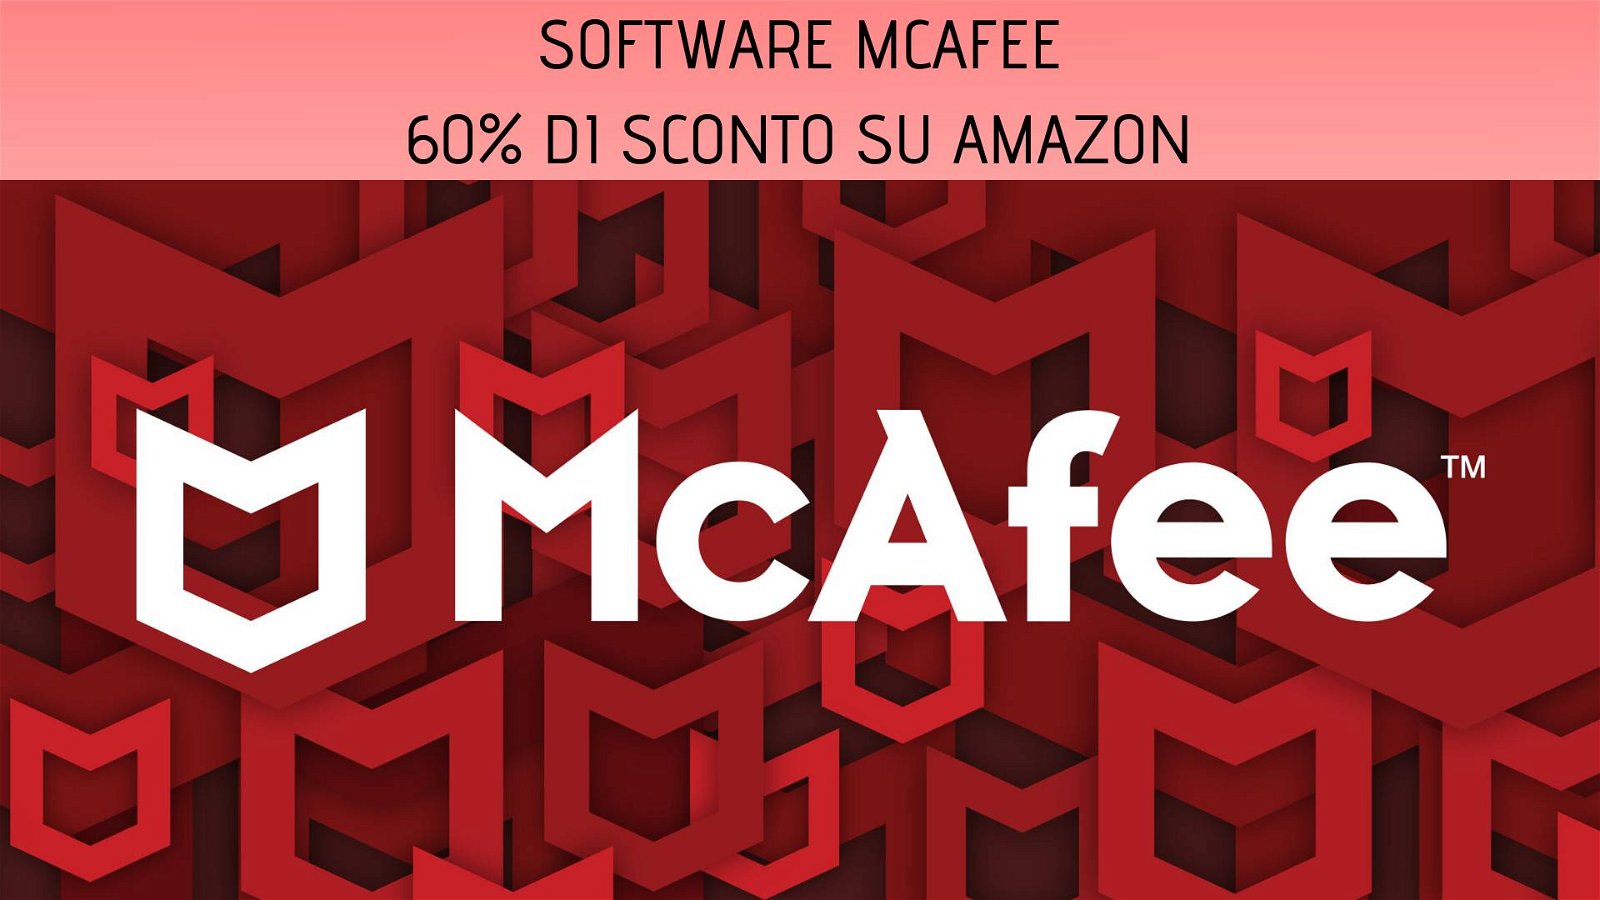 Immagine di McAfee: software antivirus in offerta su Amazon con il 60% di sconto